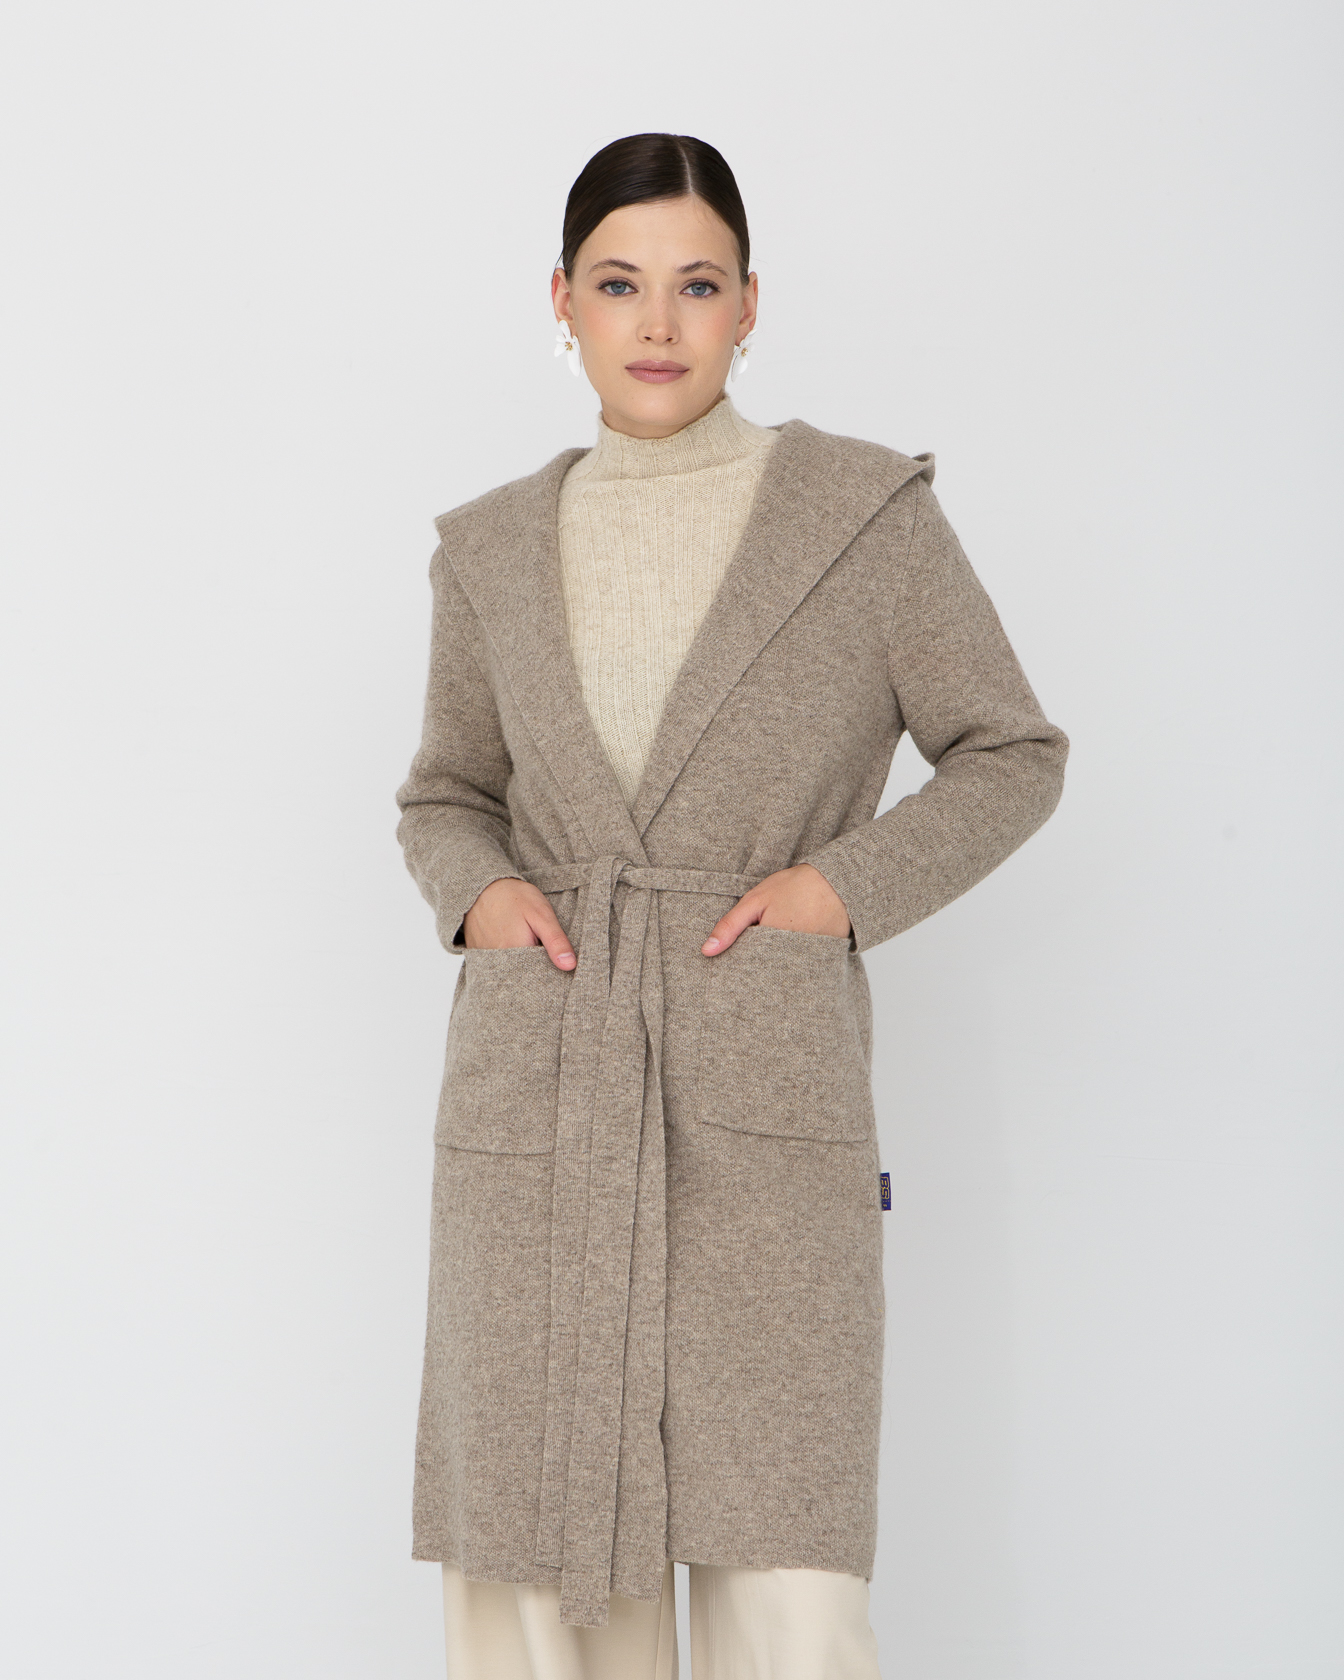 Пальто из 100% шерсти с капюшоном BS серое XXL БАТСЕЖY, цвет серый, размер XXL - фото 1